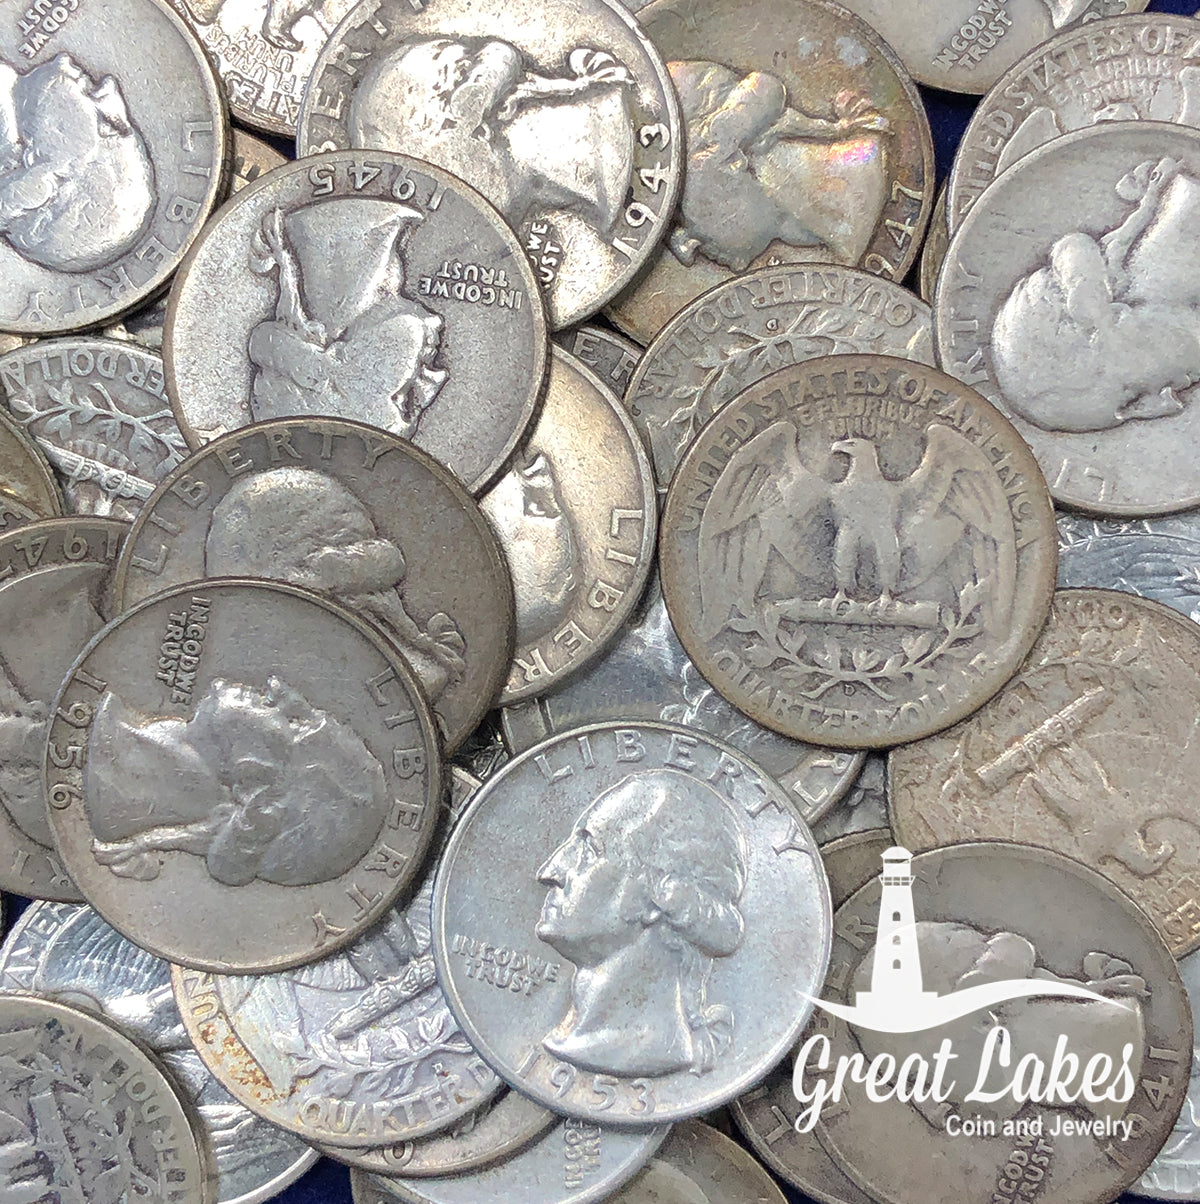 90% Silver Washington Quarters ($1 FV)